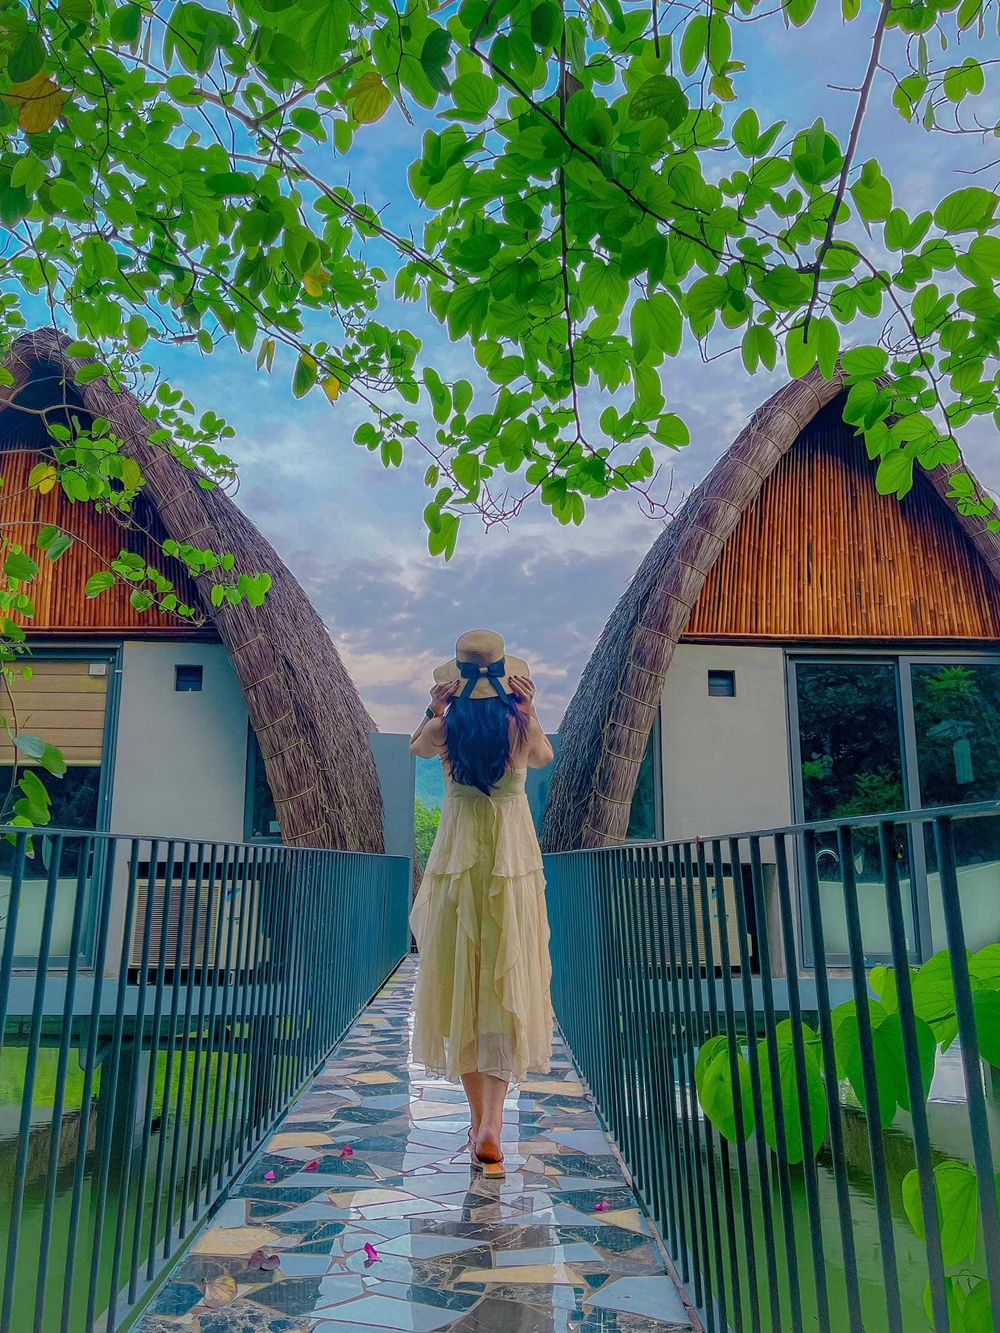 Khu resort ở Ninh Bình: Thánh thót “đàn tre” giữa núi rừng, có Nhà tre lớn bậc nhất Đông Nam Á - Ảnh 5.